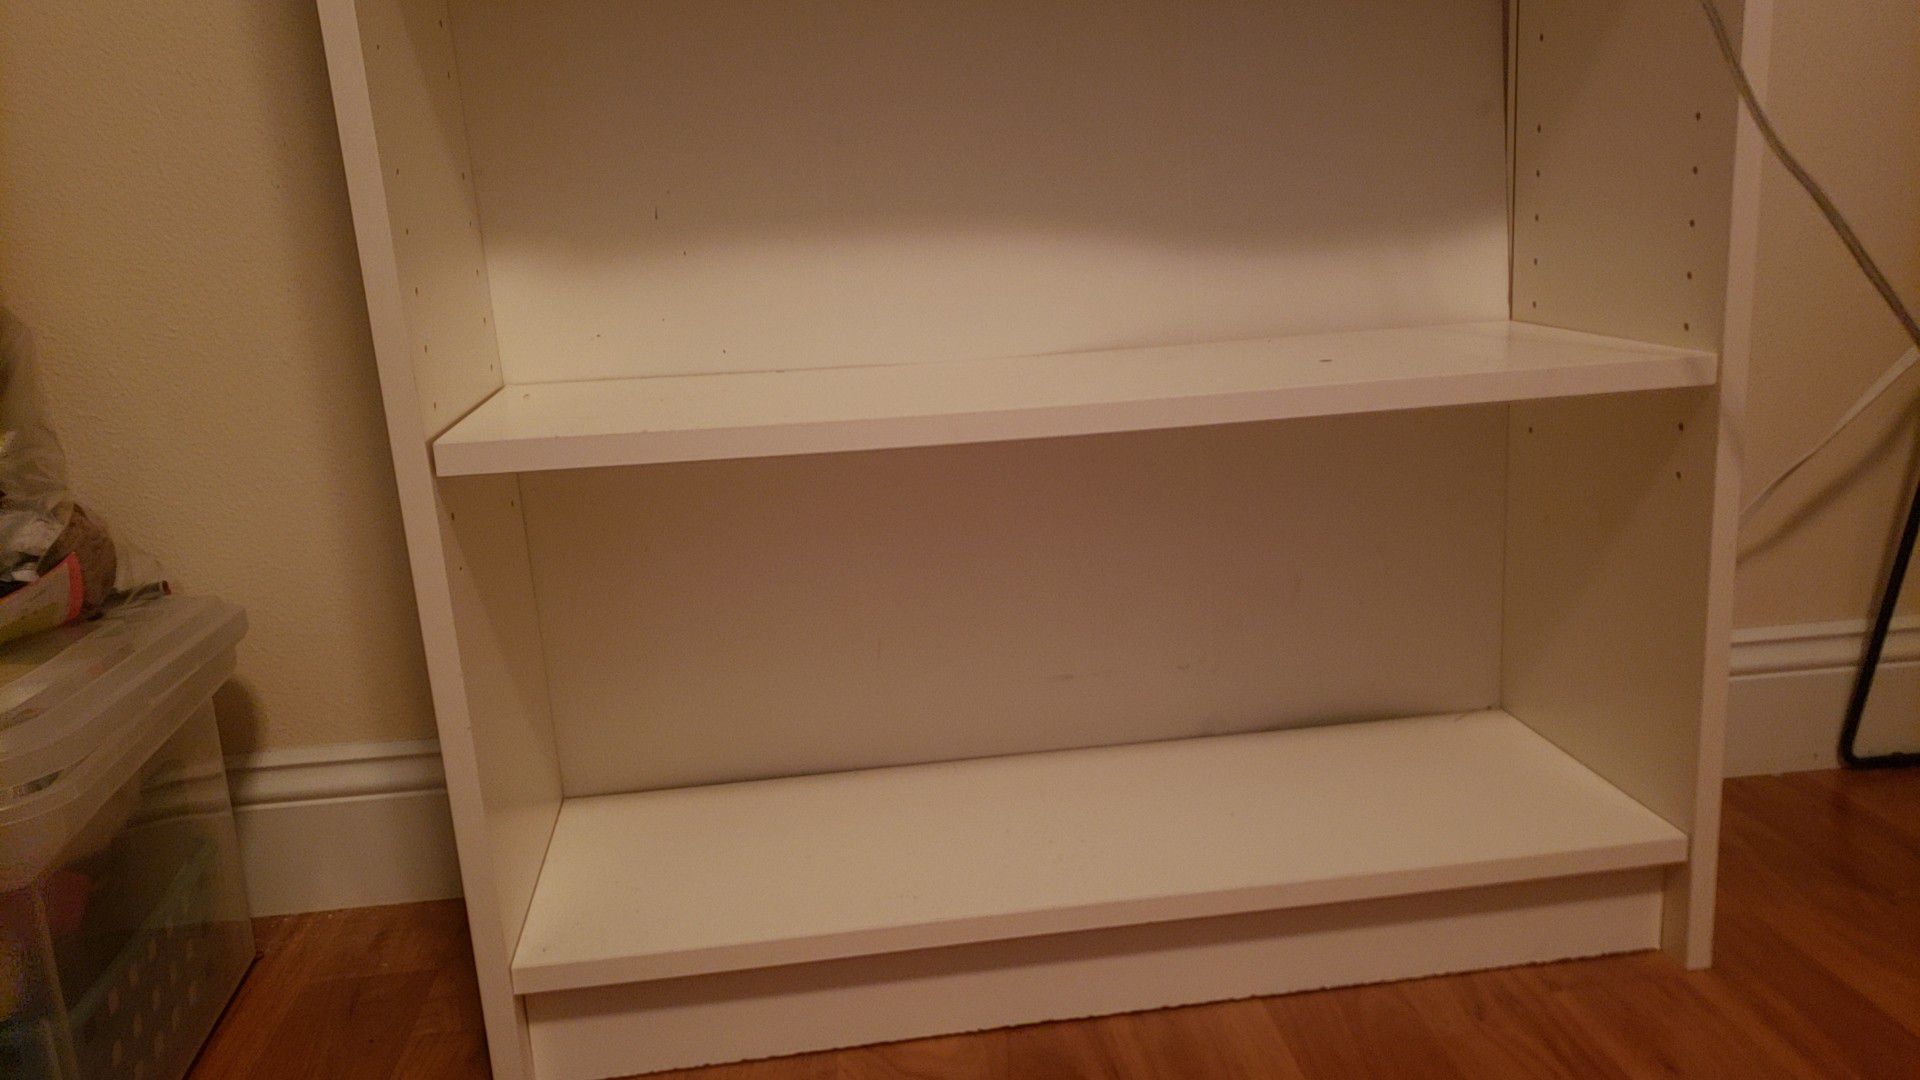 3 shelf white bookcase